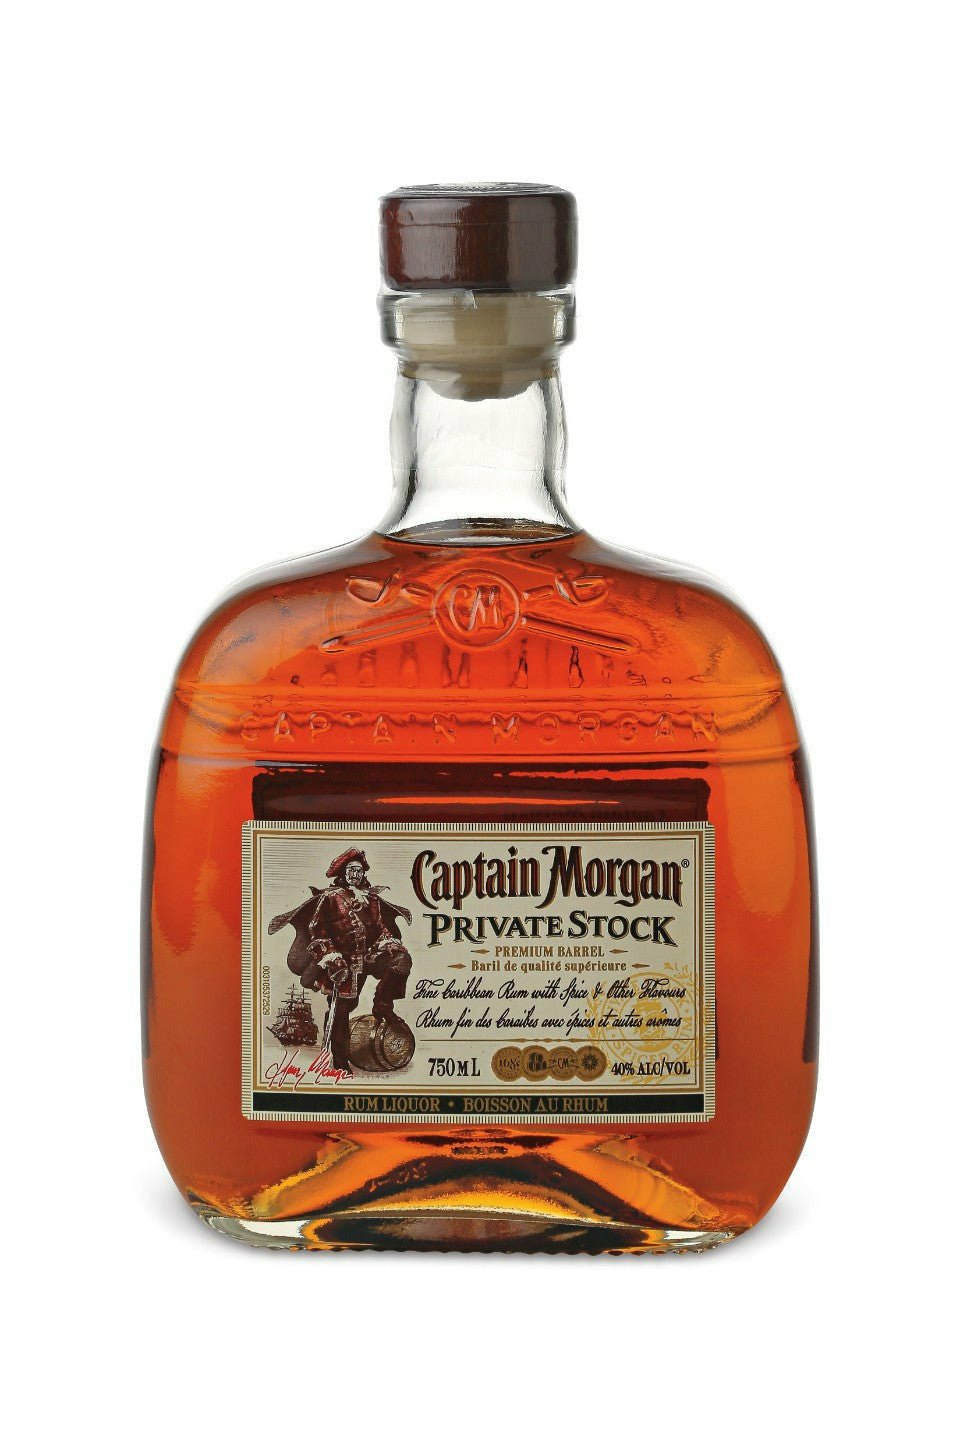 Captain Morgan Private Stock Rum - francosliquorstore